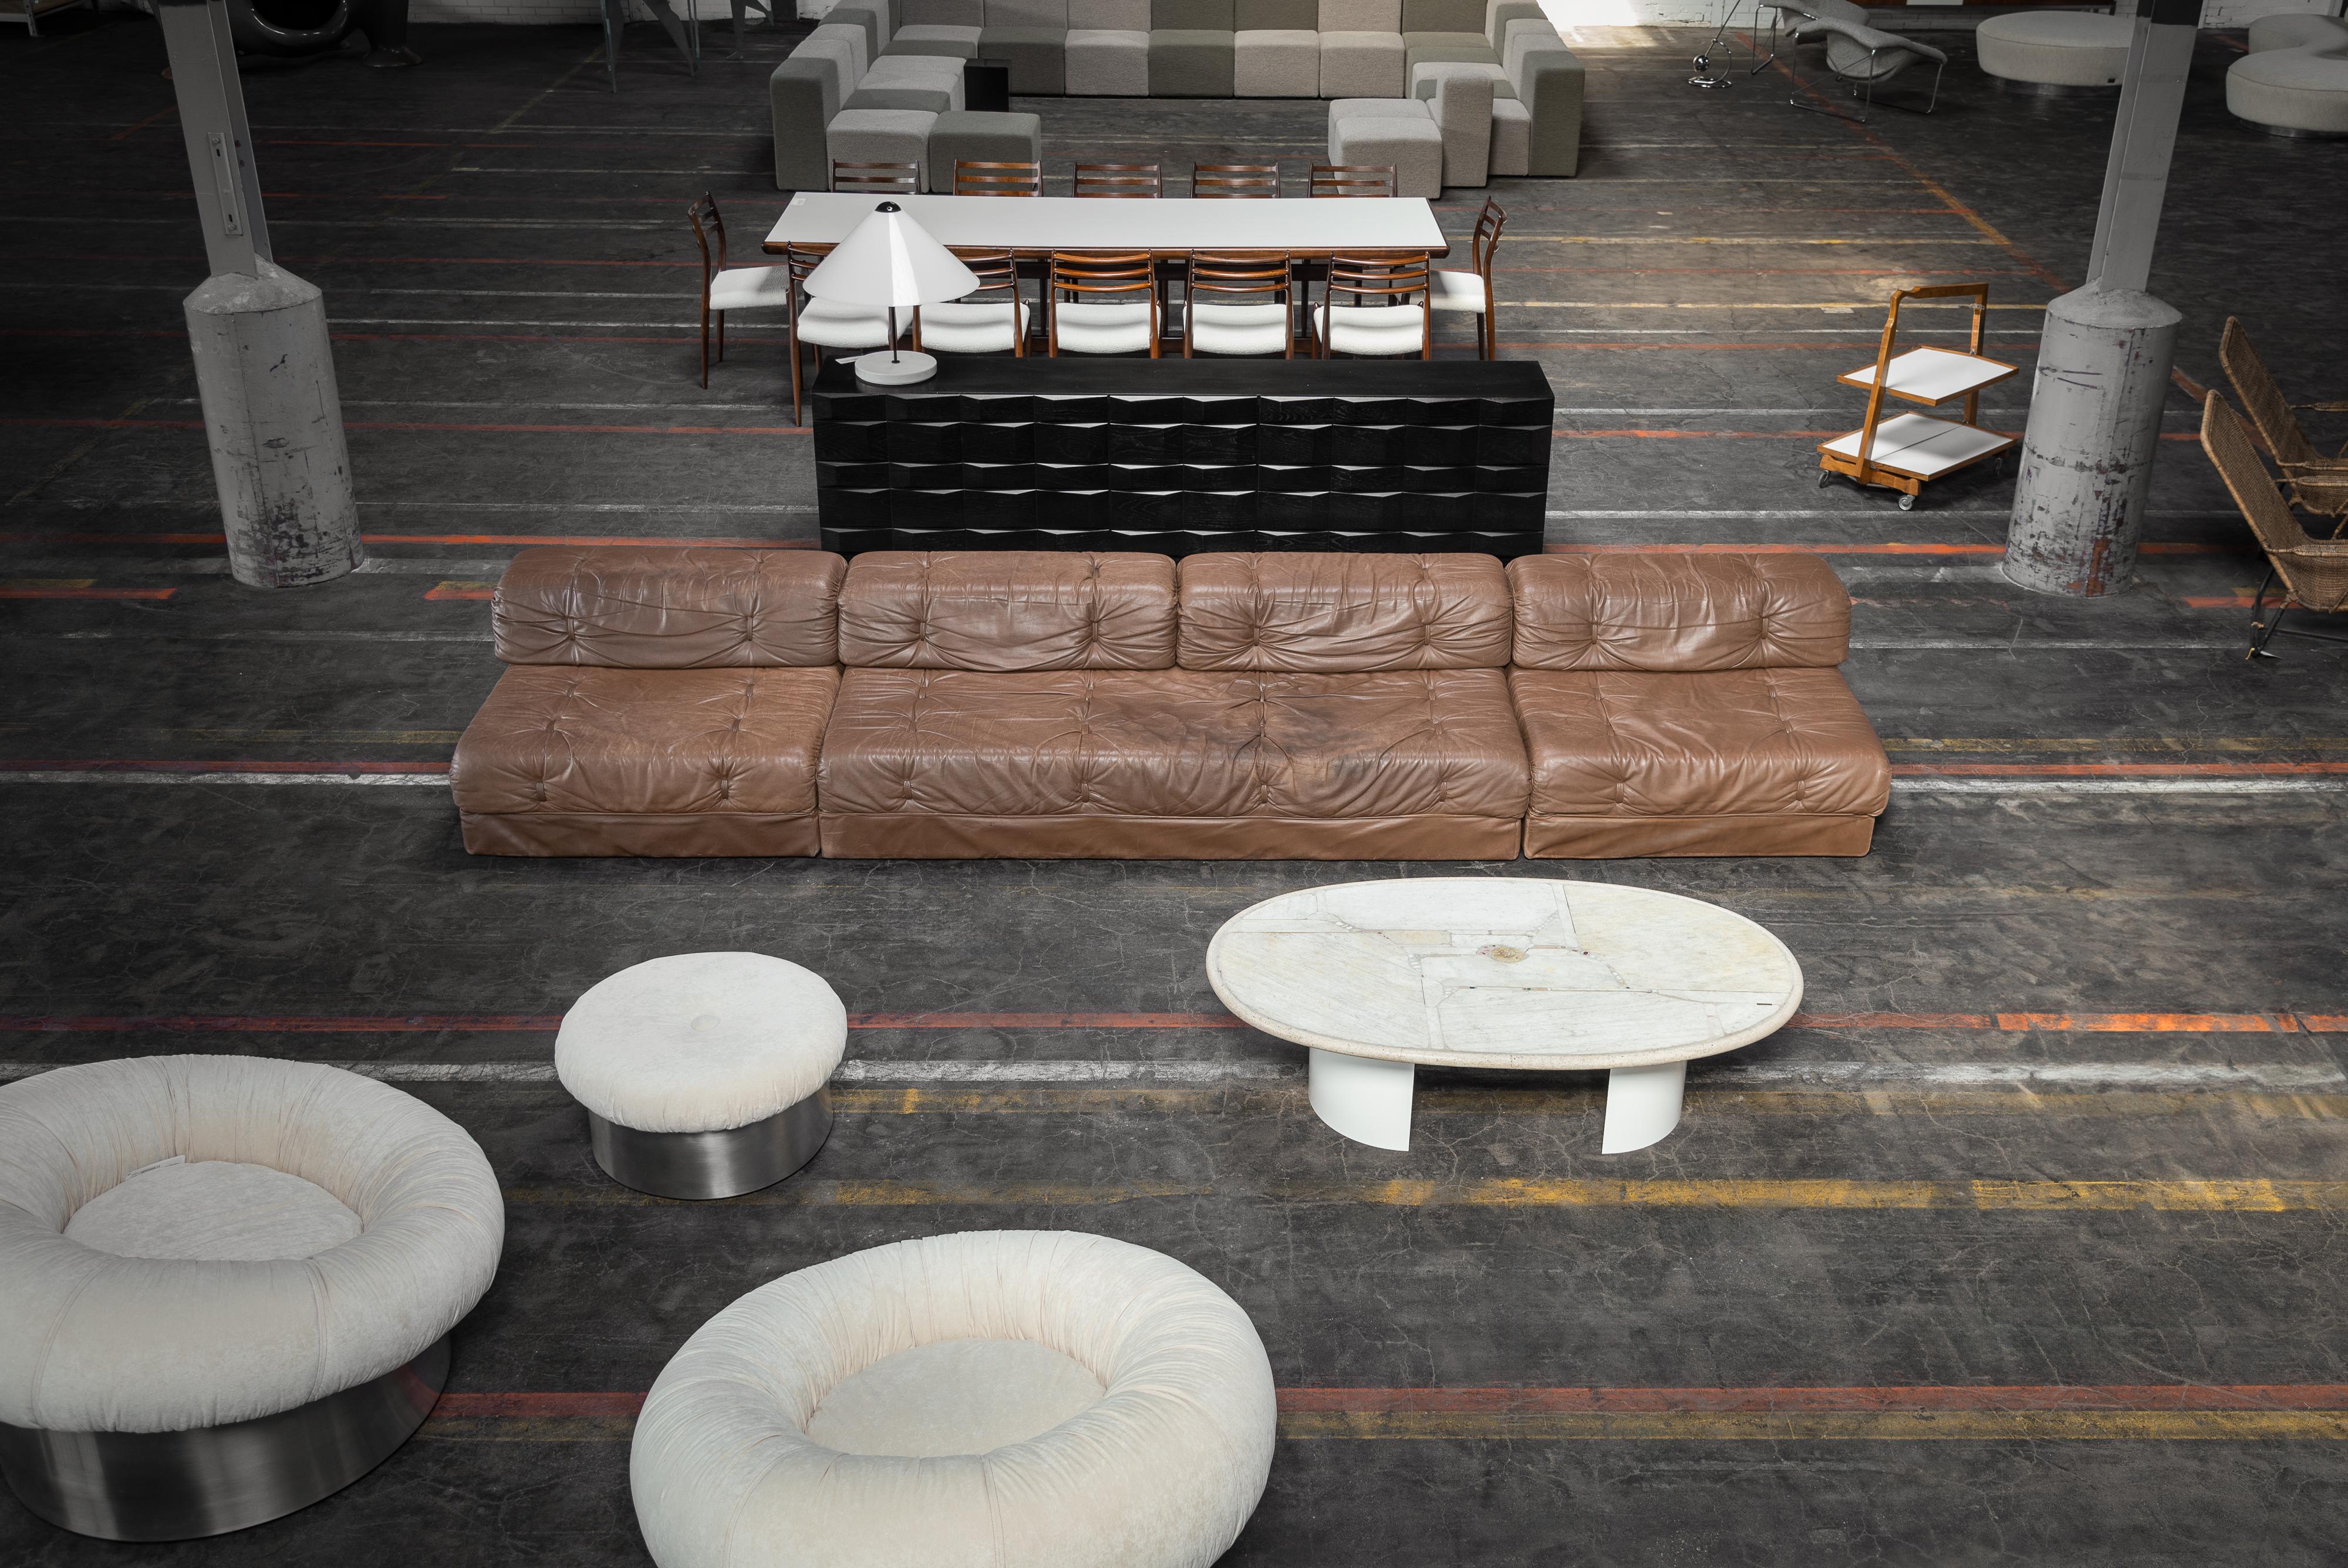 Super cooles Wittmann Atrium modulares Ledersofa hergestellt in Österreich 1970. Dieses Sofa ist aus dunkelbraunem Leder gefertigt und besteht aus einem 2-Sitzer und 2 Einzelsitzen, die ein flexibles modulares System bilden. Es hat Ähnlichkeiten mit